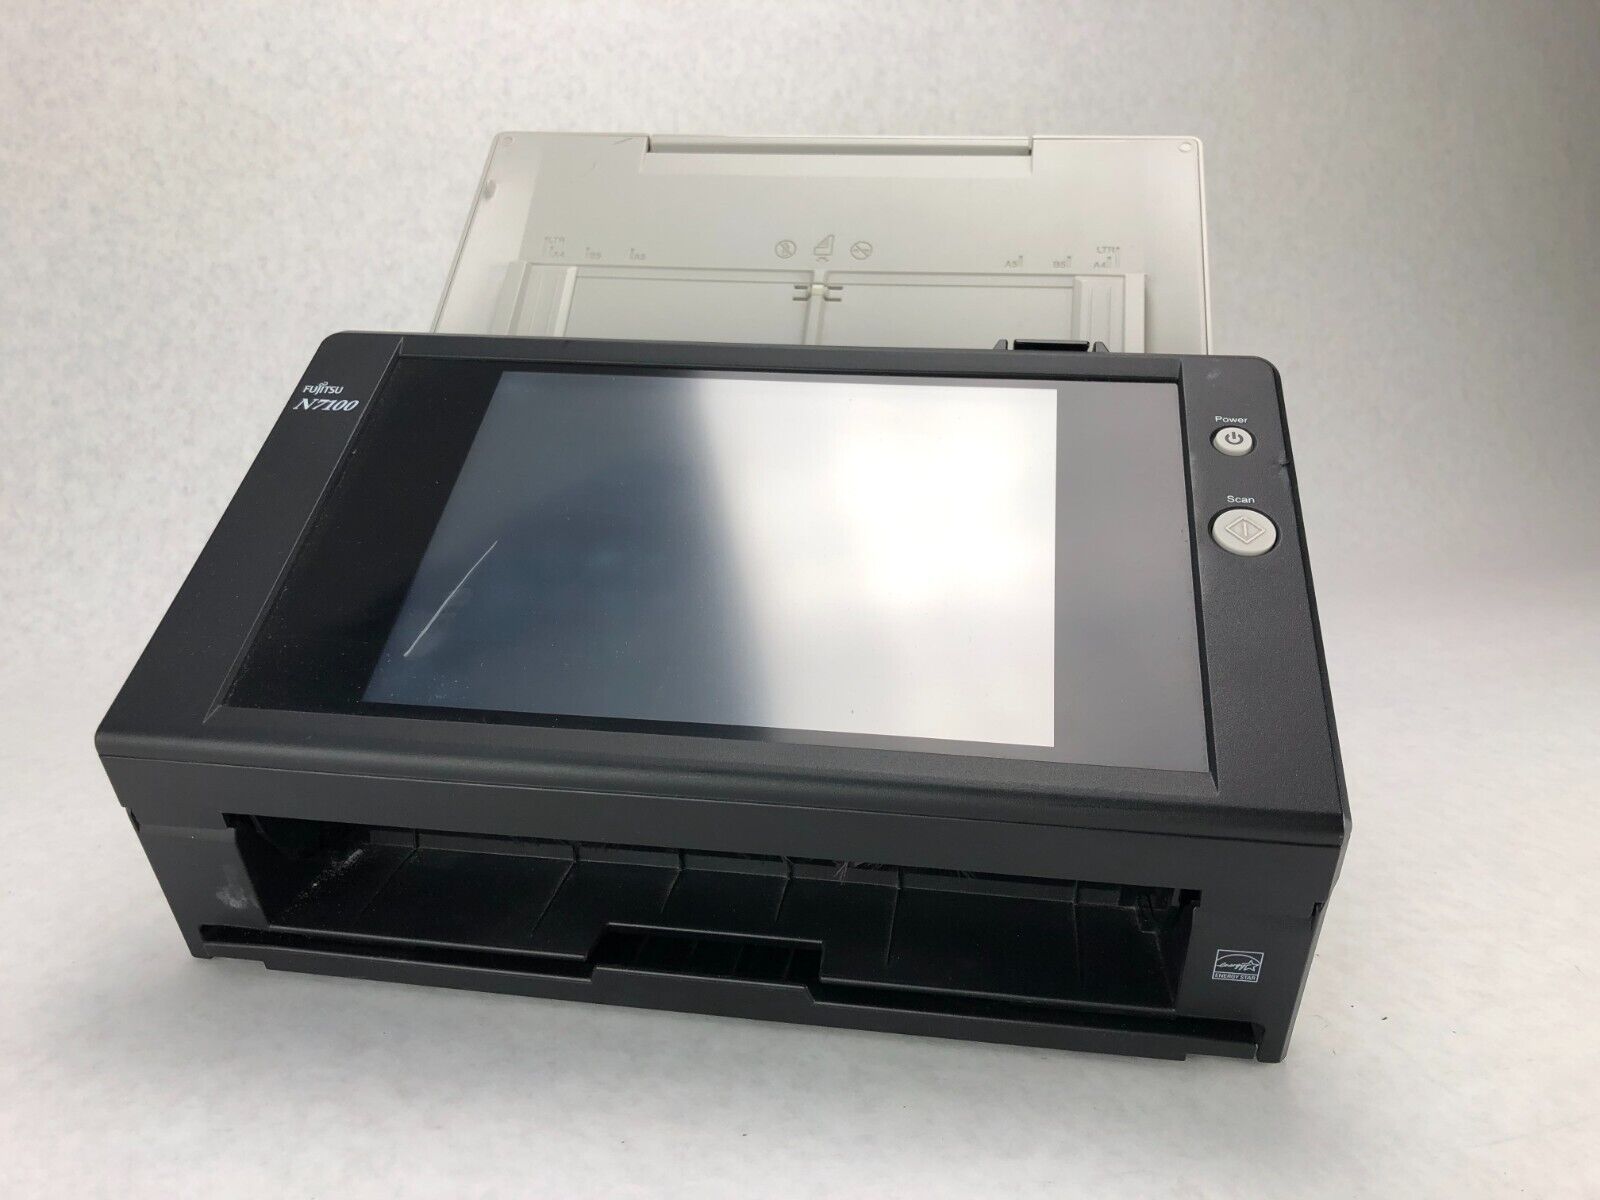 Fujitsu N7100 Network Document Scanner - Parts or Repair